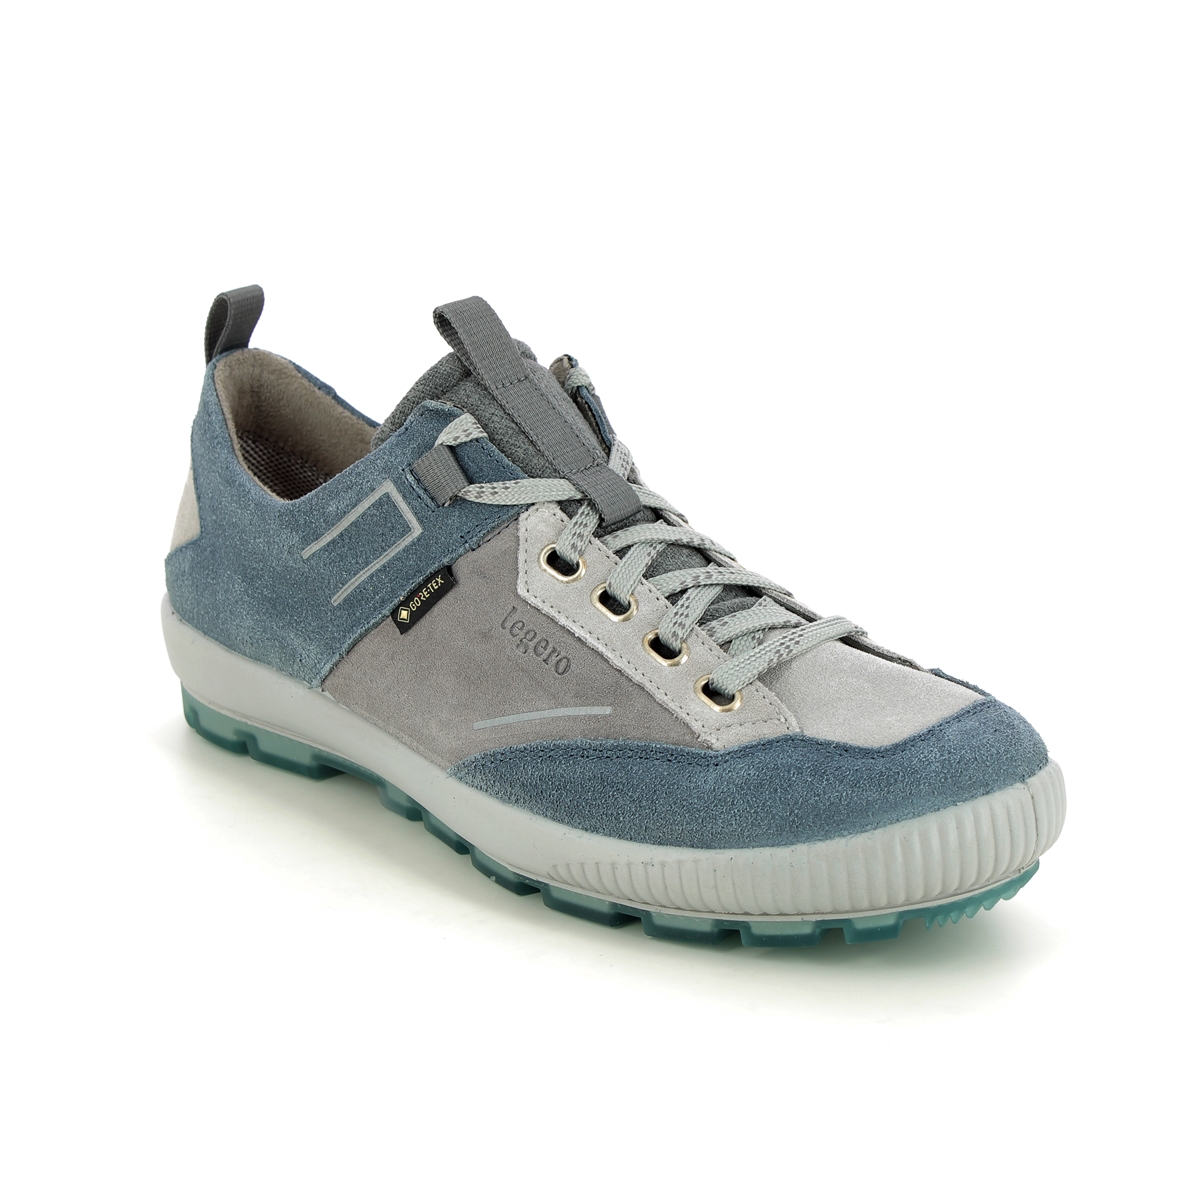 Legero Tanaro Trek Gtx Blue Womens Walking Shoes 2000126-8500 in a Plain Leather in Size 7